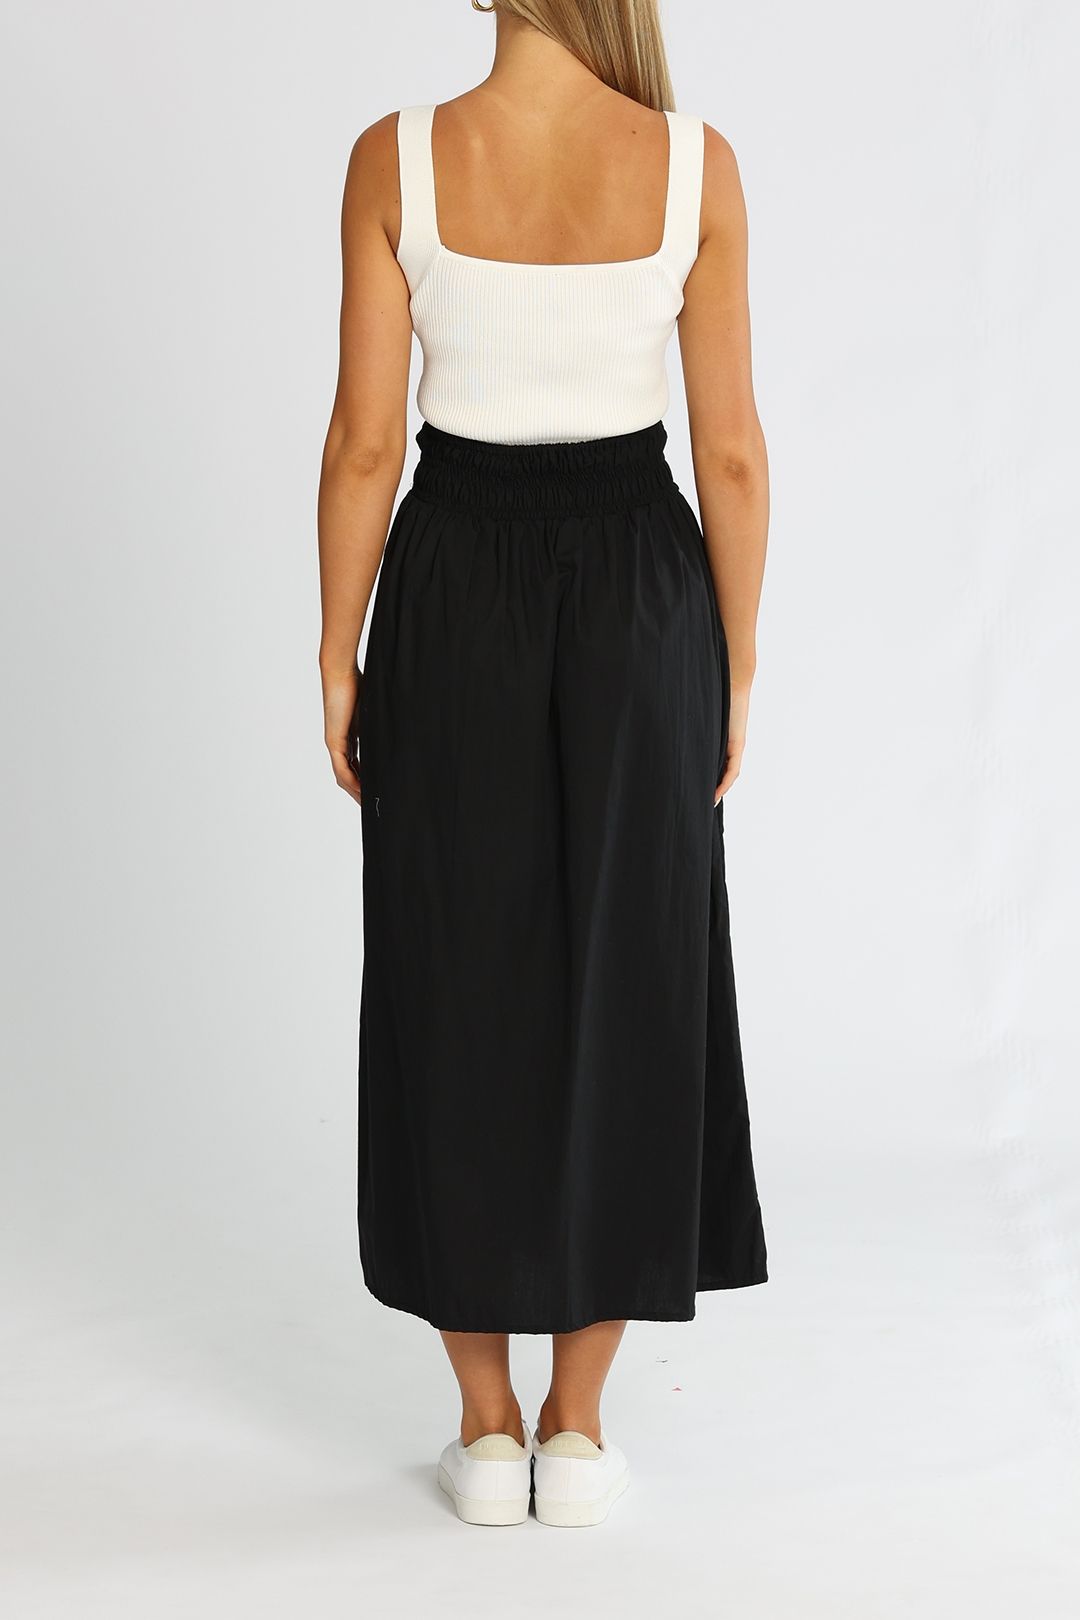 Faithfull Kiera Skirt Plain Black Midi